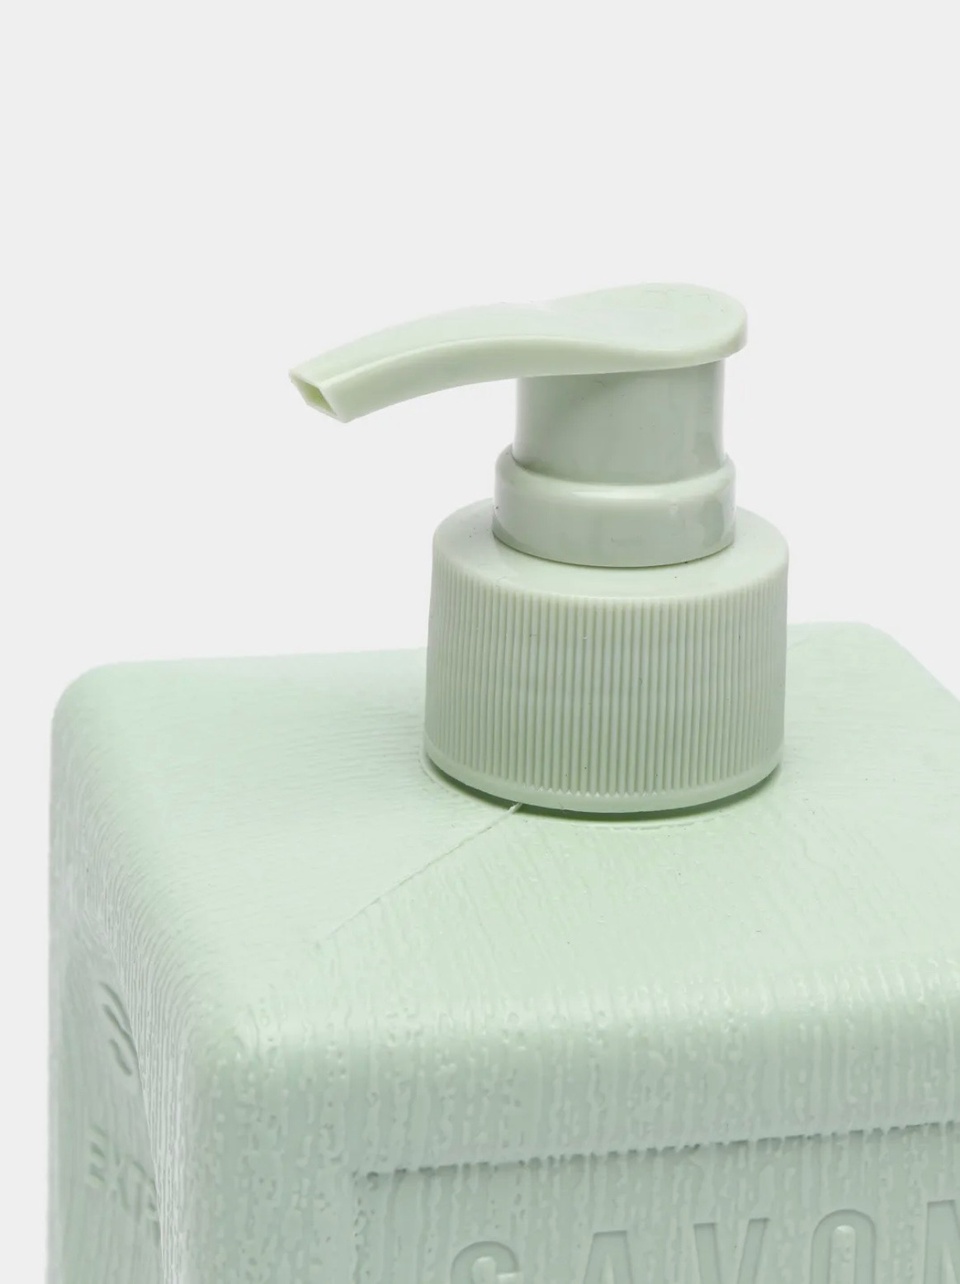 Savon De Royal Жидкое мыло «Зеленый куб», серия «Прованс» - 200 ₽, заказать онлайн.